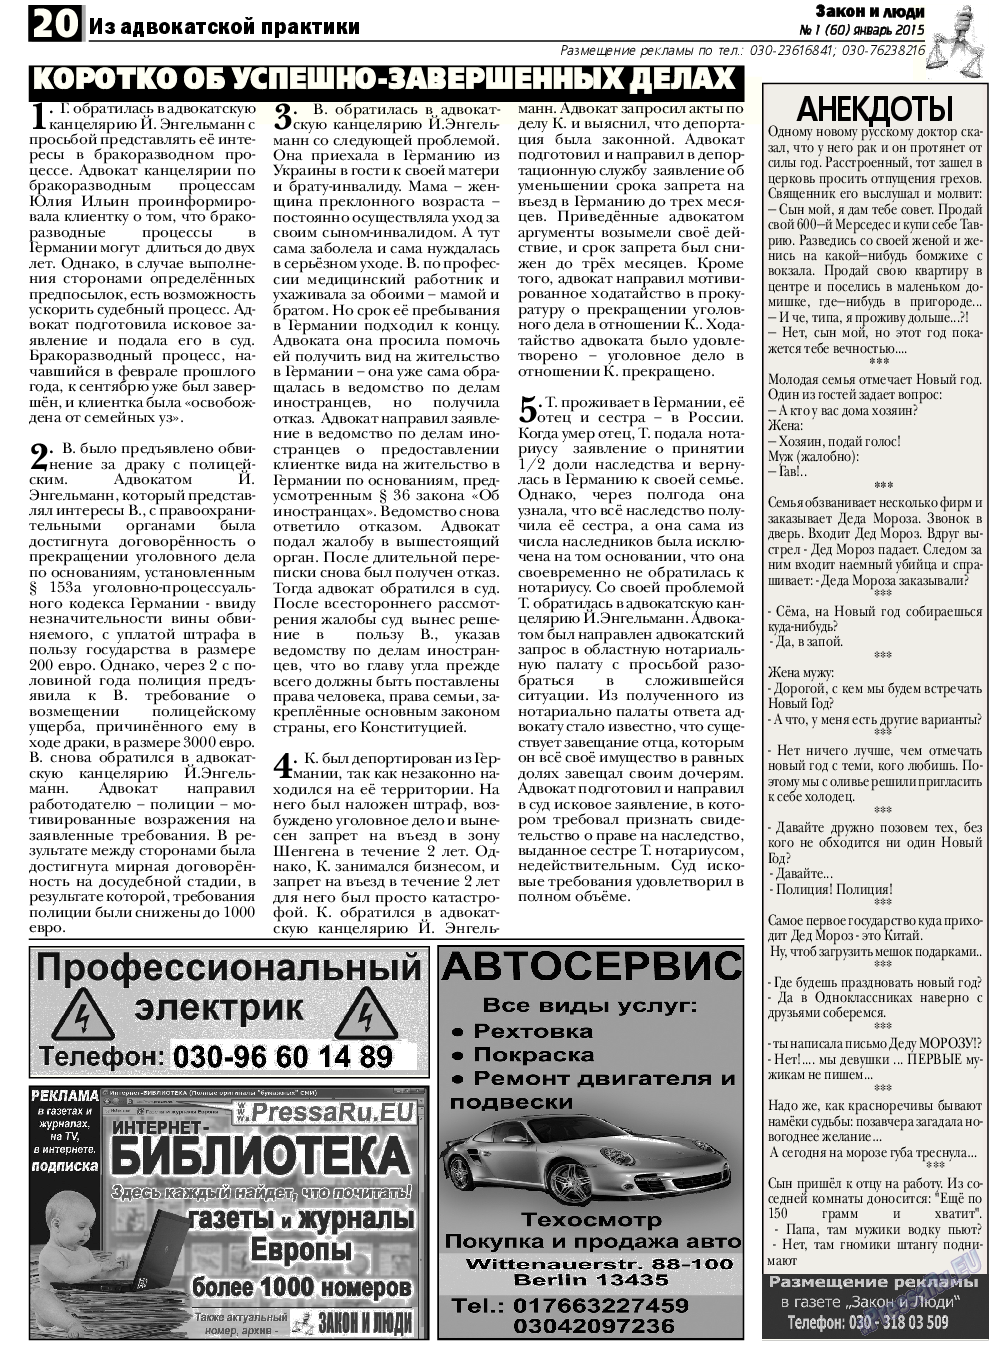 Закон и люди, газета. 2015 №1 стр.20